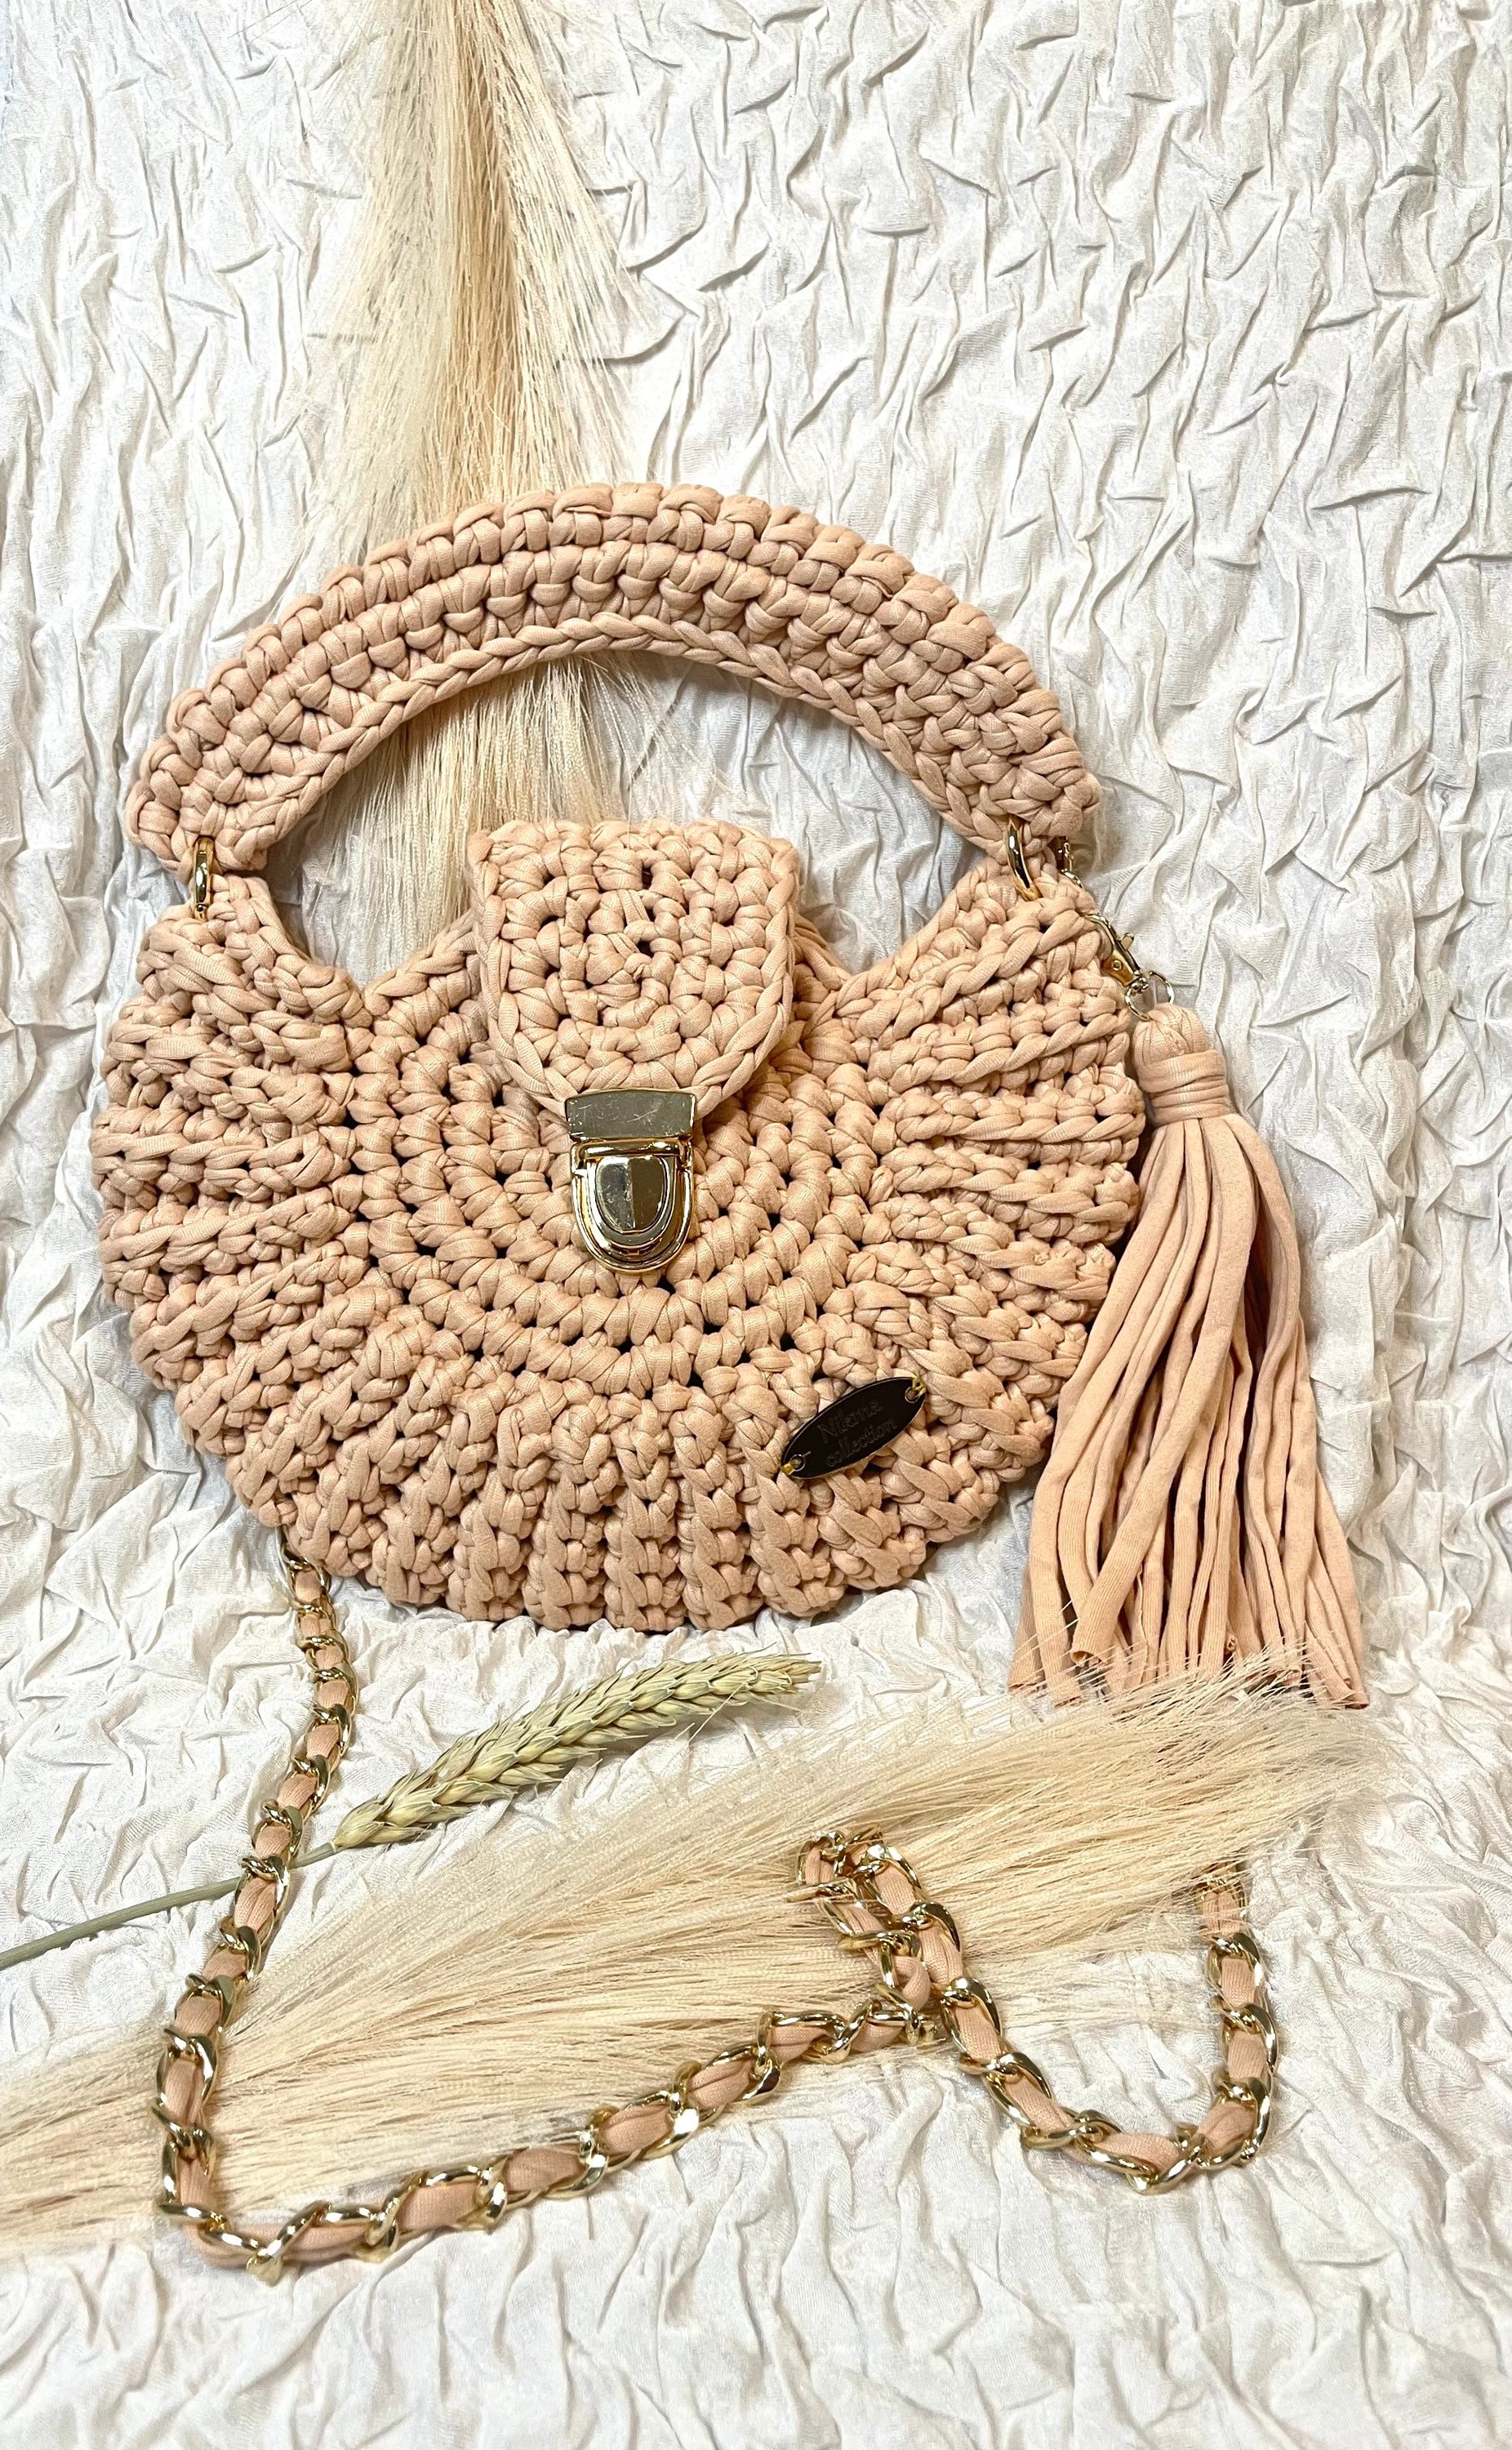 Trapillo para bolsos de crochet Lycra Degradada Ocean